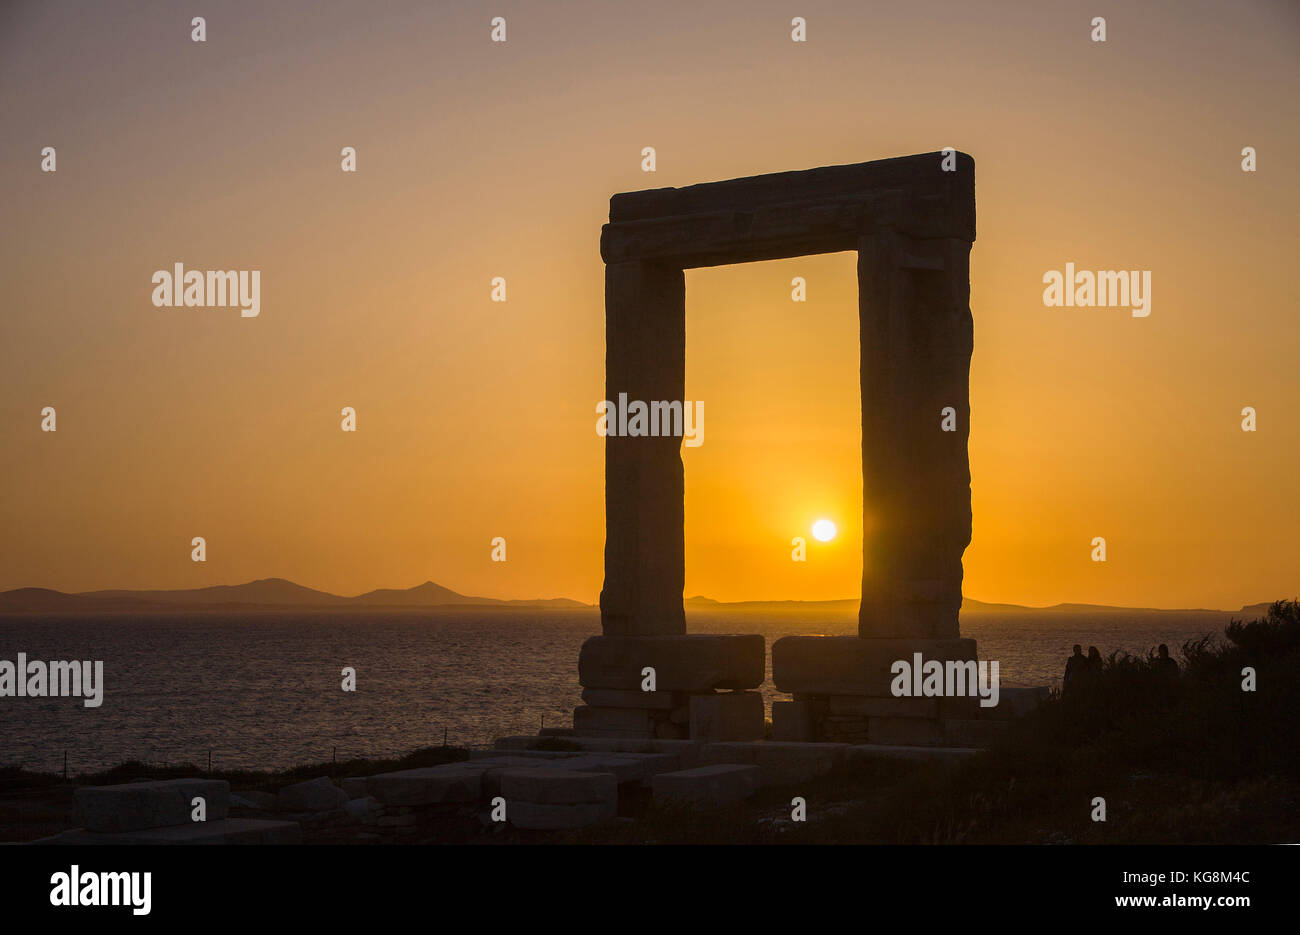 Portara de Naxos au coucher du soleil, vue de l'île de Naxos, Cyclades, Mer Égée, Grèce Banque D'Images